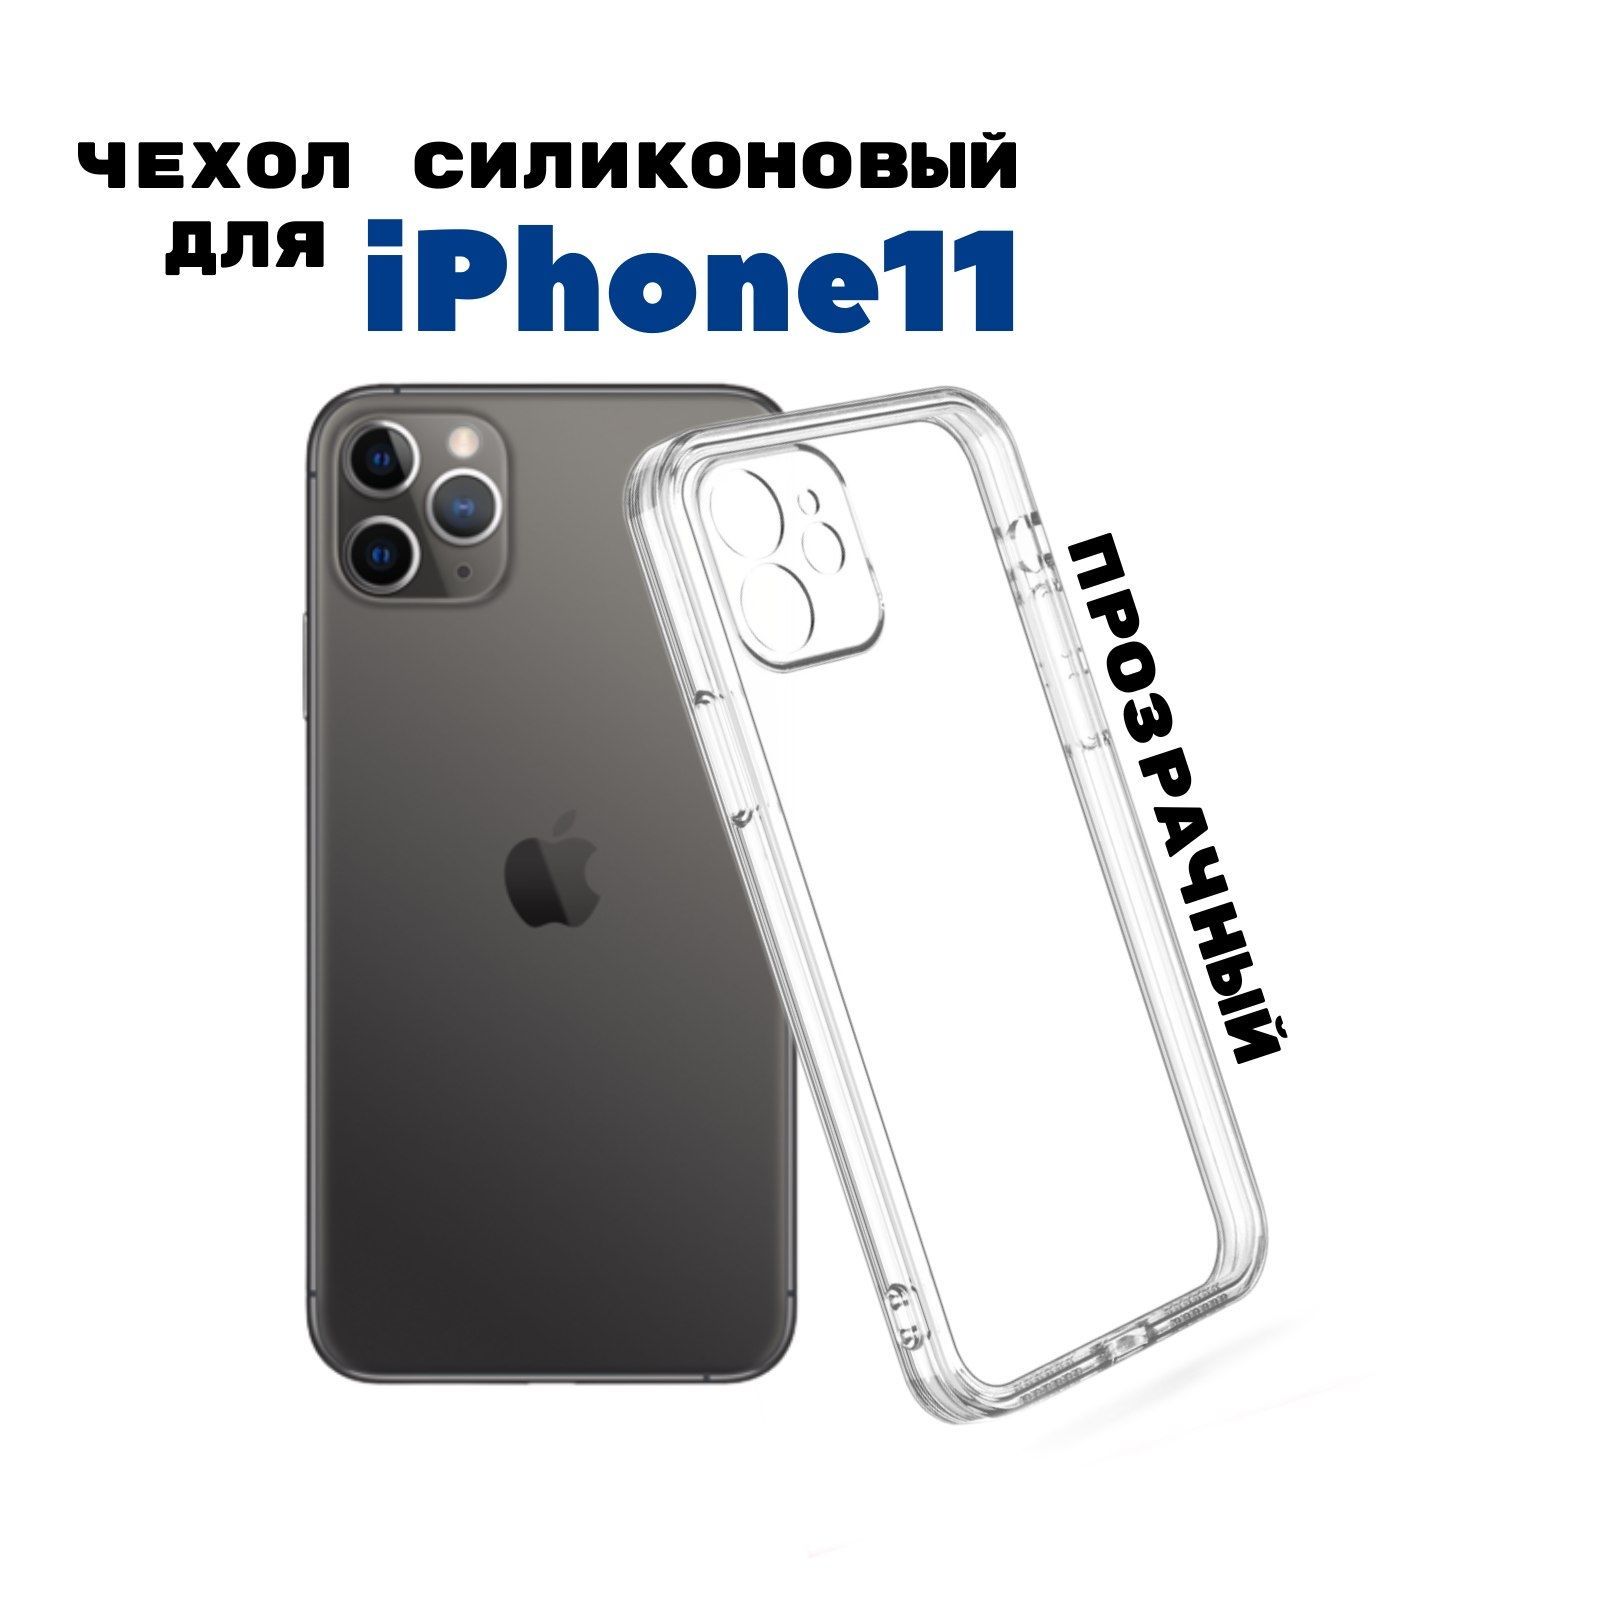 ЧехолнаiPhone11прозрачныйсиликоновыйсзащитойкамеры